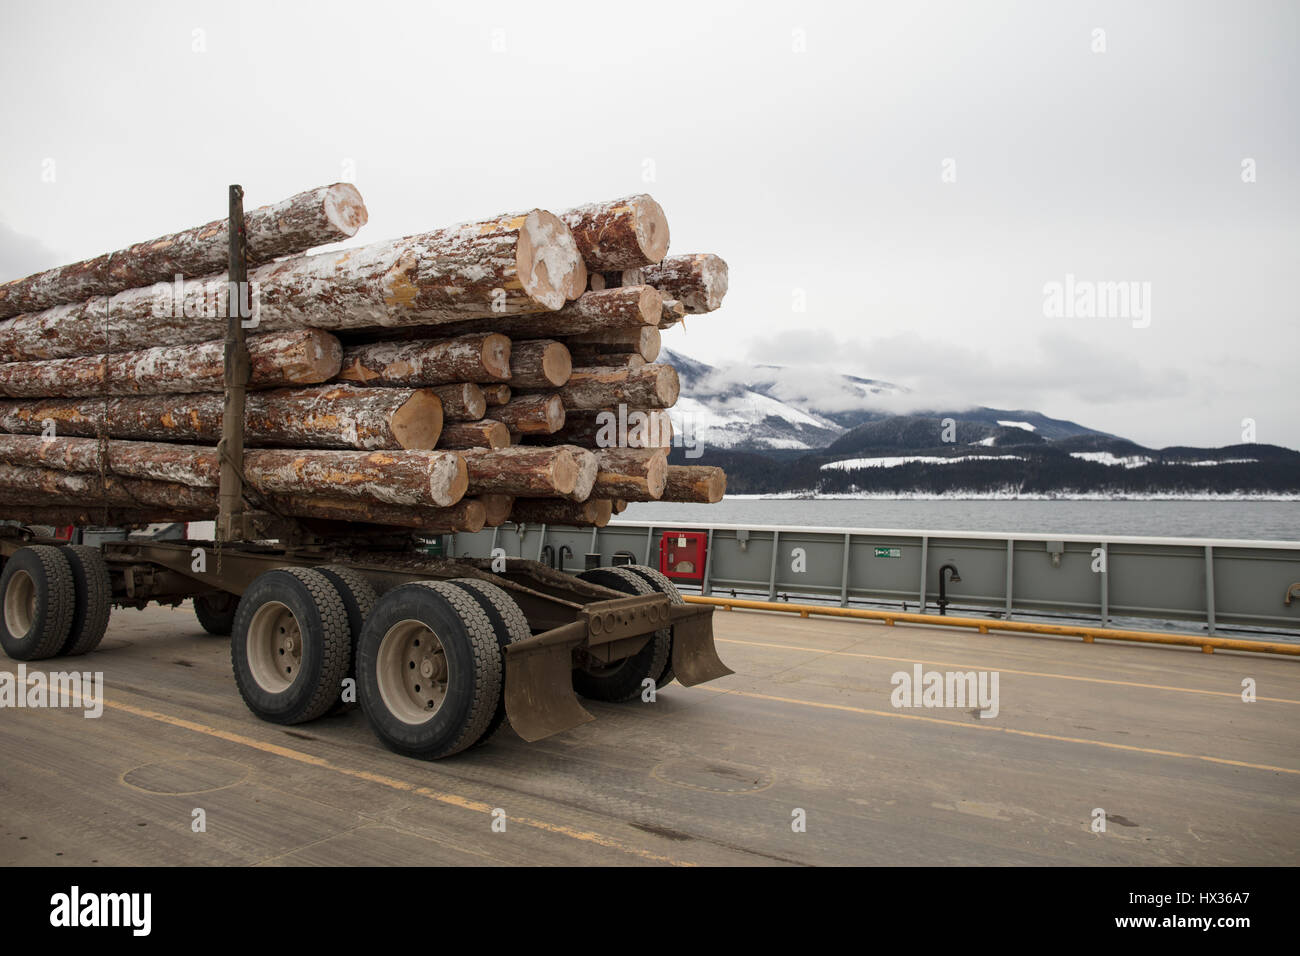 SHELTER BAY, BC, Canada - Février 03, 2017 : Un camion transportant des journaux sur un ferry de Shelter Bay, Colombie-Britannique, Canada. ( Ryan Carter ) Banque D'Images